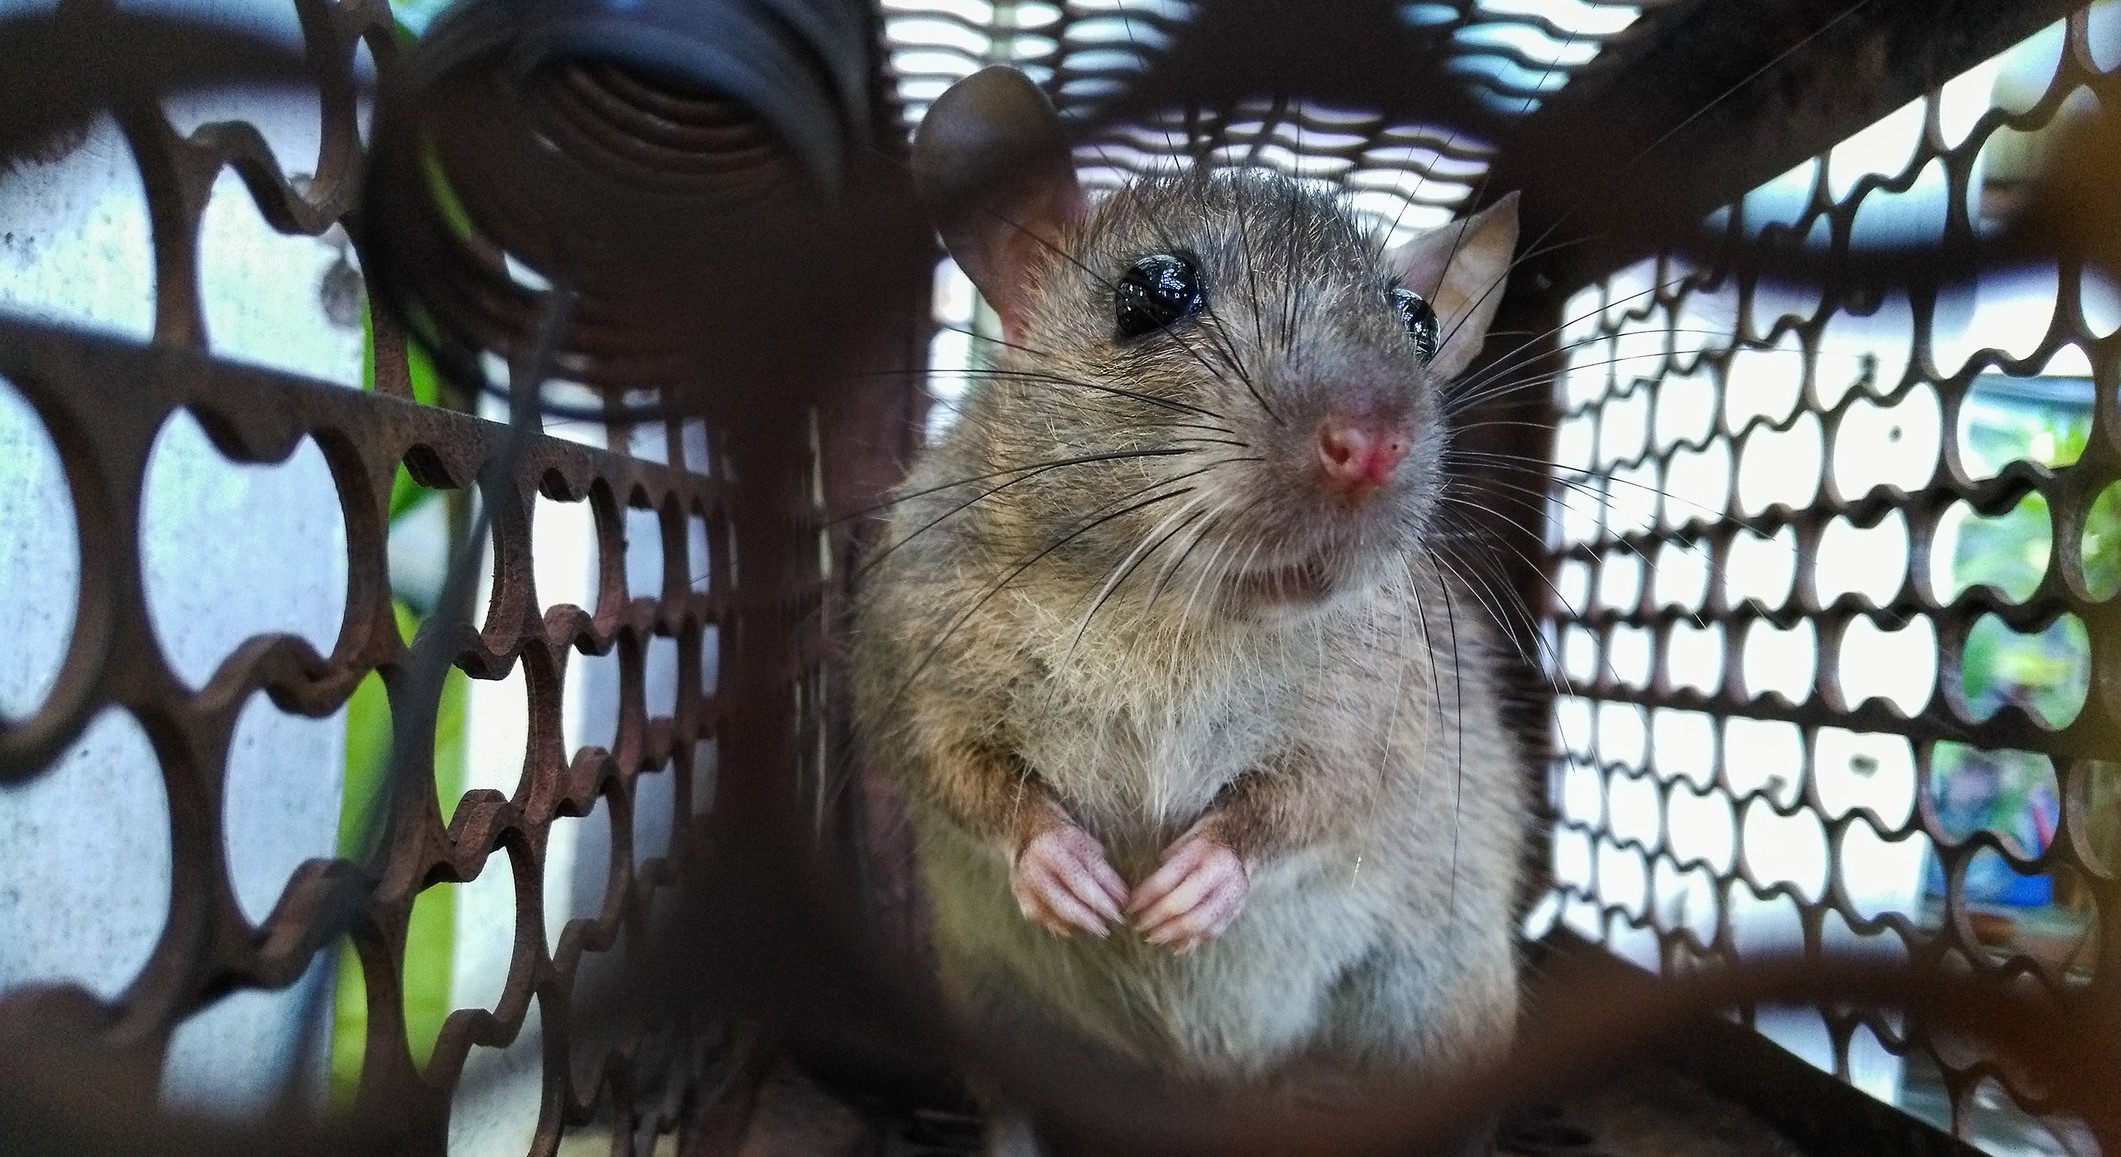 ΗΠΑ: Μεταλλαγμένα ποντίκια με σούπερ μύες θα σώσουν αστροναύτες κι άτομα με αναπηρίες (βίντεο)